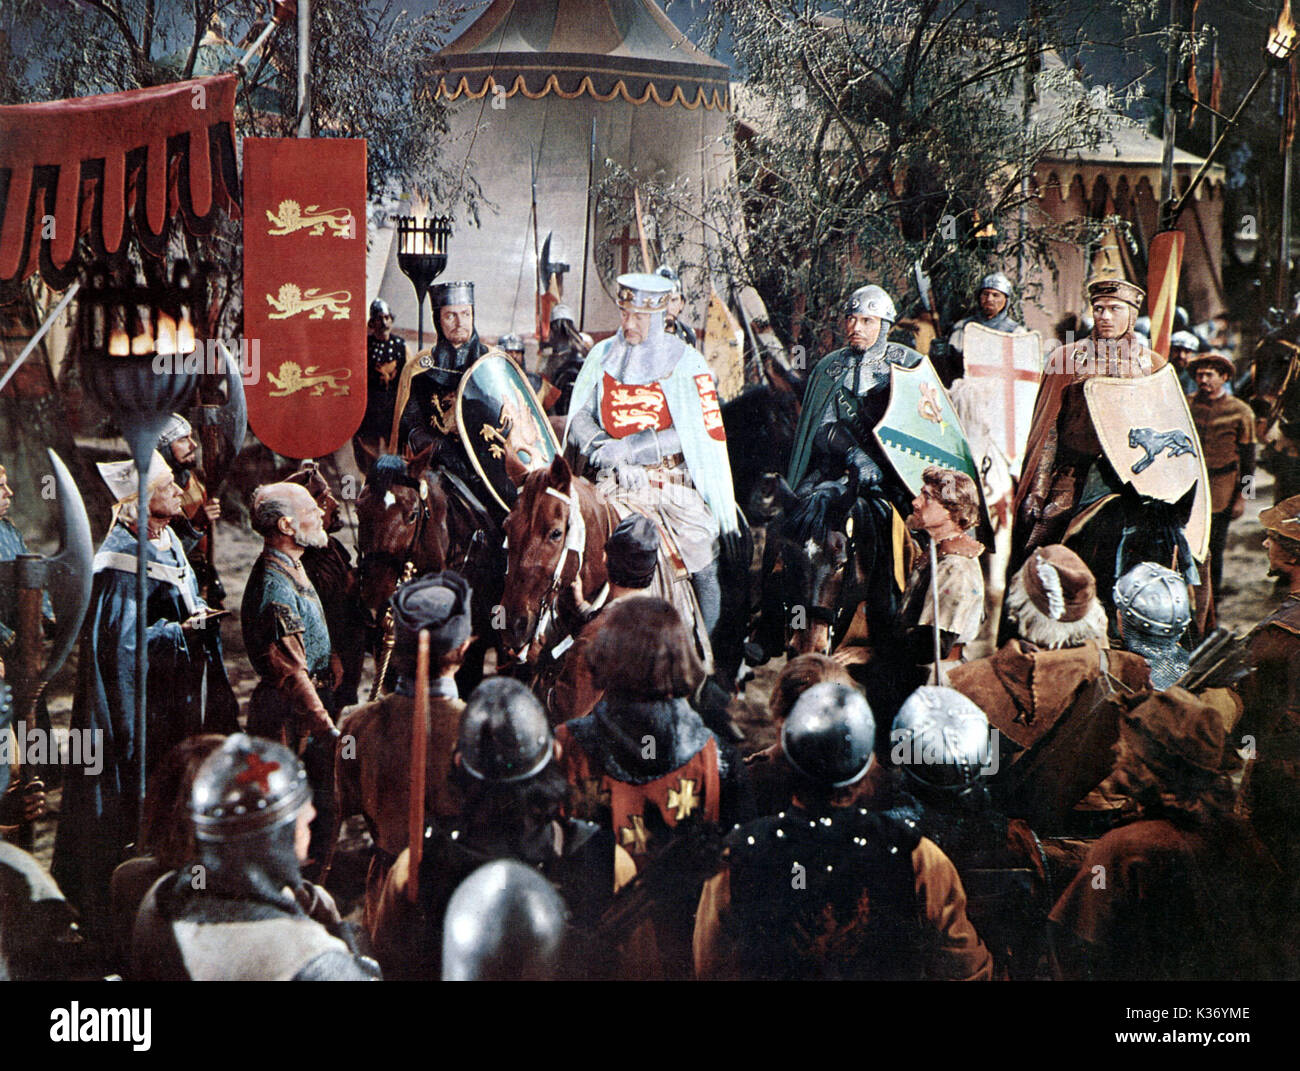 Le ROI RICHARD ET LES CROISÉS GEORGE SANDERS COMME RICHARD COEUR DE LION D'UN MGM PHOTO Date : 1954 Banque D'Images